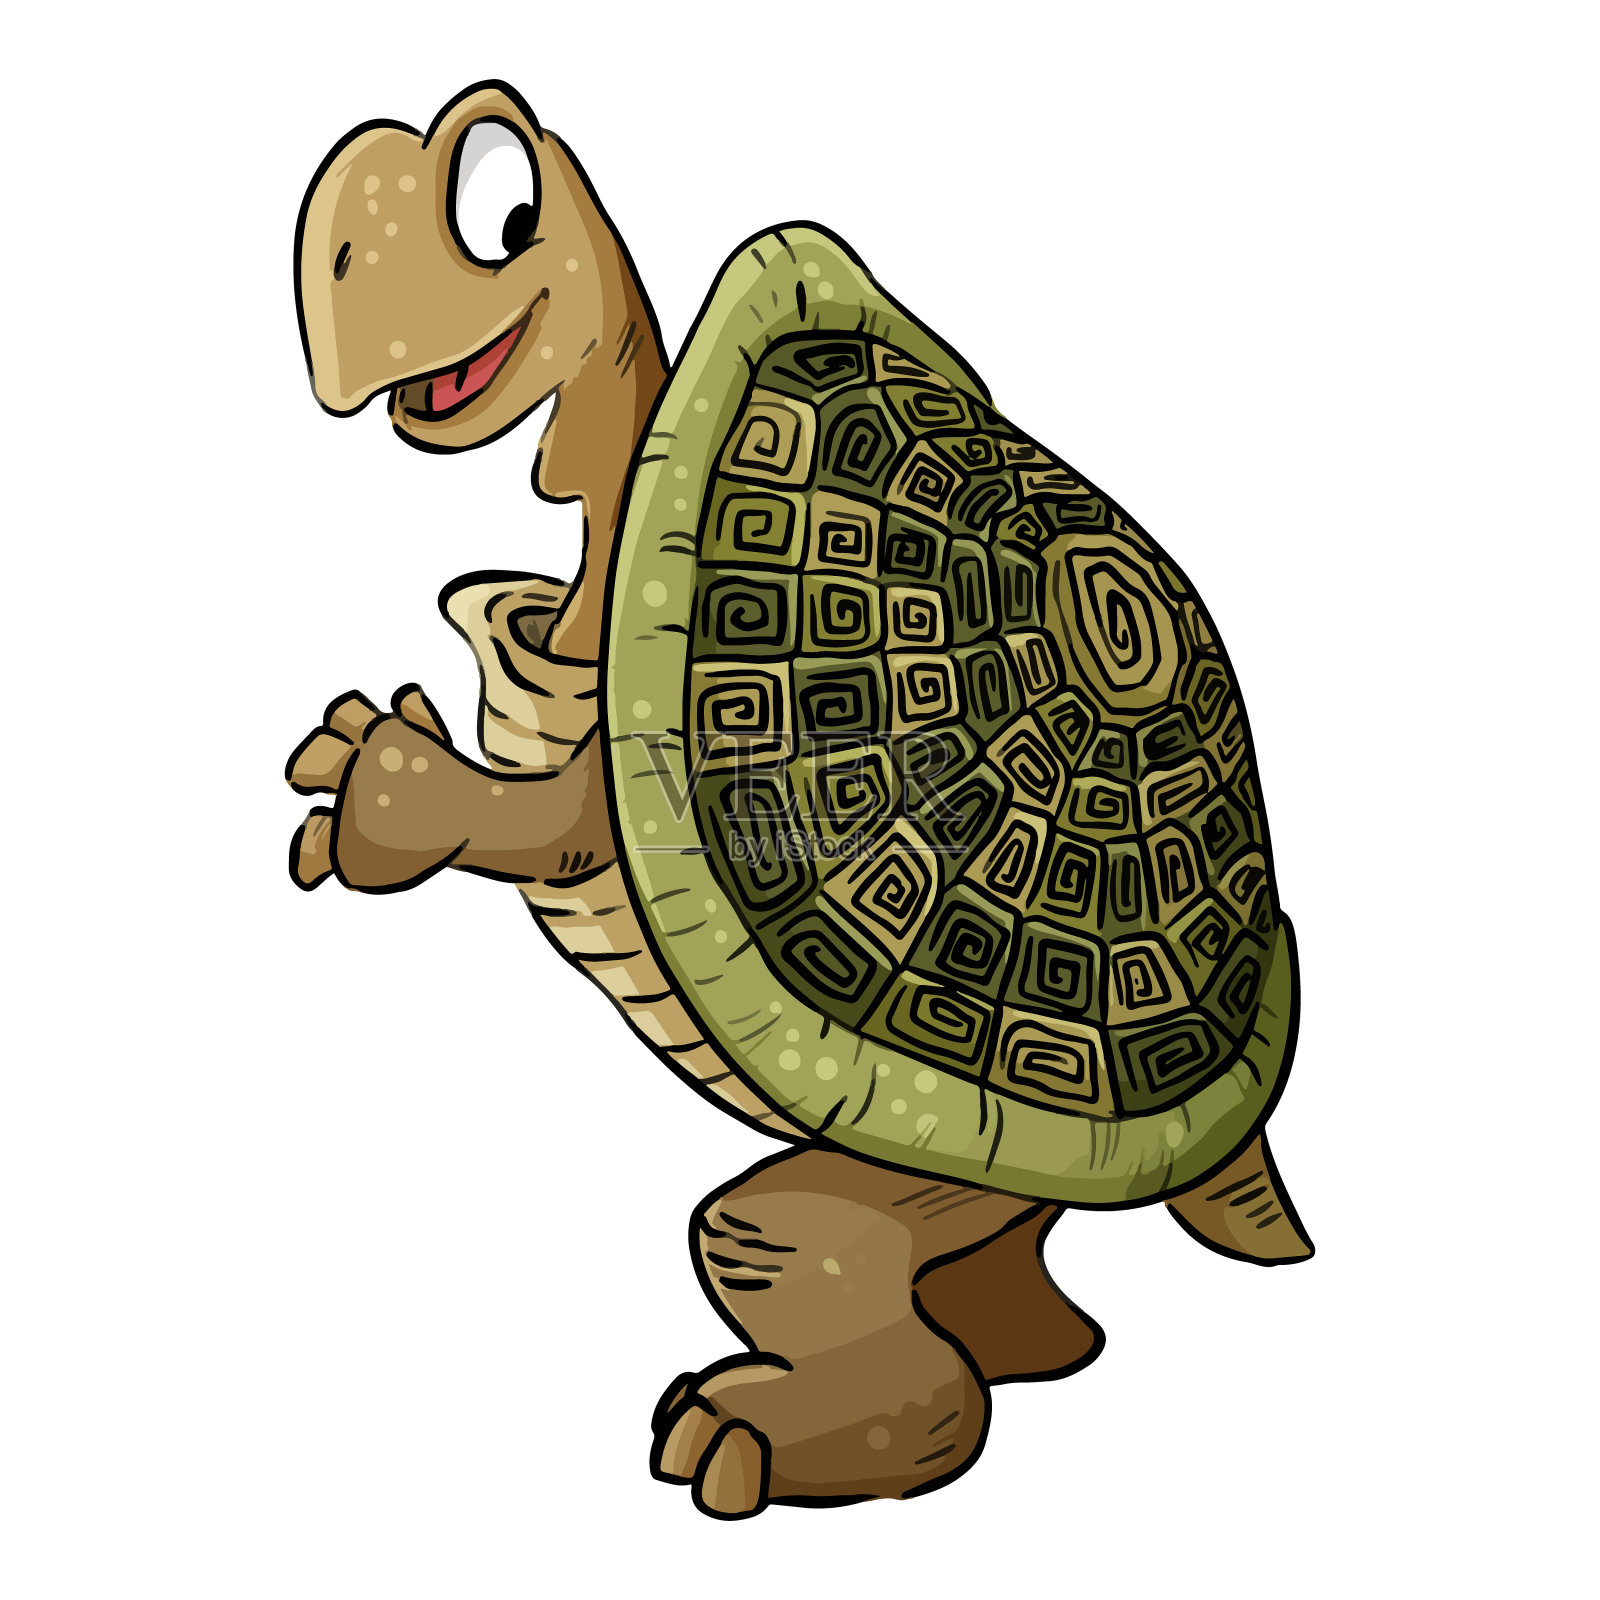 乌龟的形象。可爱的乌龟的卡通插图。漫画风格的宠物涂鸦设计元素图片